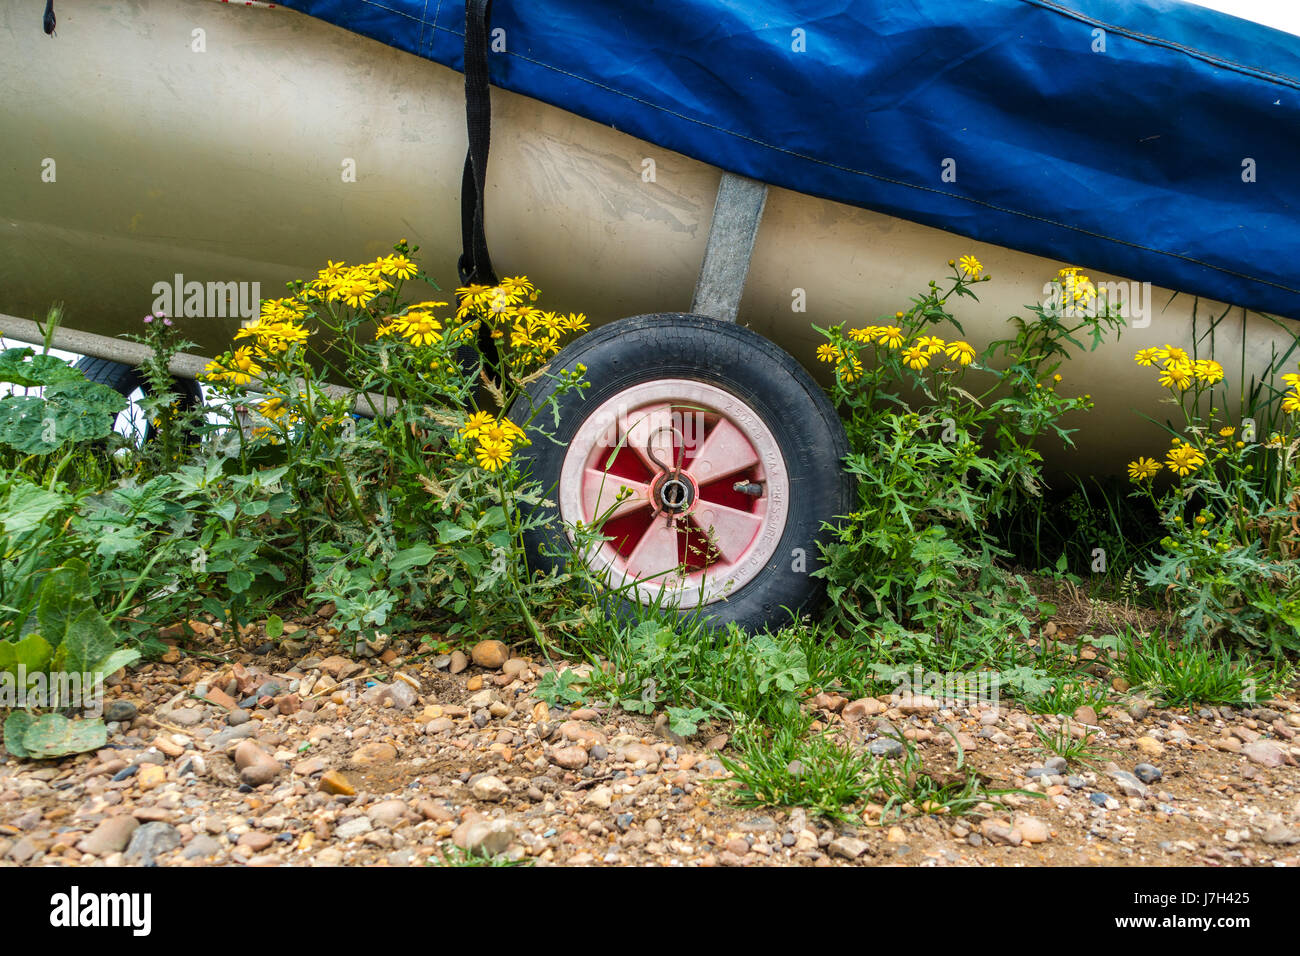 Die Räder der Bootsanhänger mit einem Boot angeschnallt. Blumen und Strand Steinen umgeben den trailer Stockfoto